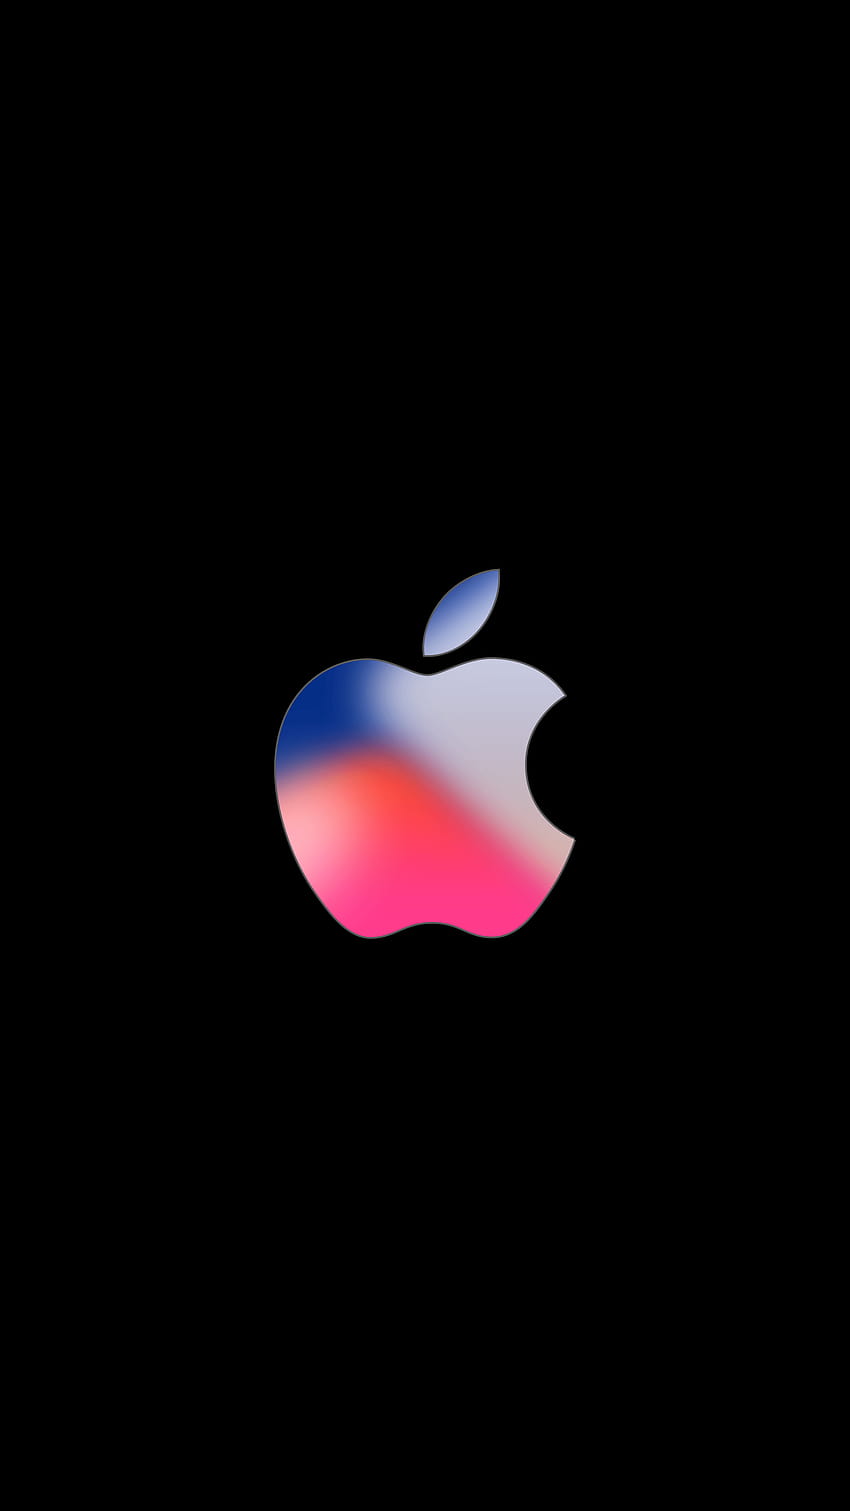 Evento del iPhone 8 del 12 de septiembre para iPhone, iPad y el logotipo negro de Apple 1080 fondo de pantalla del teléfono